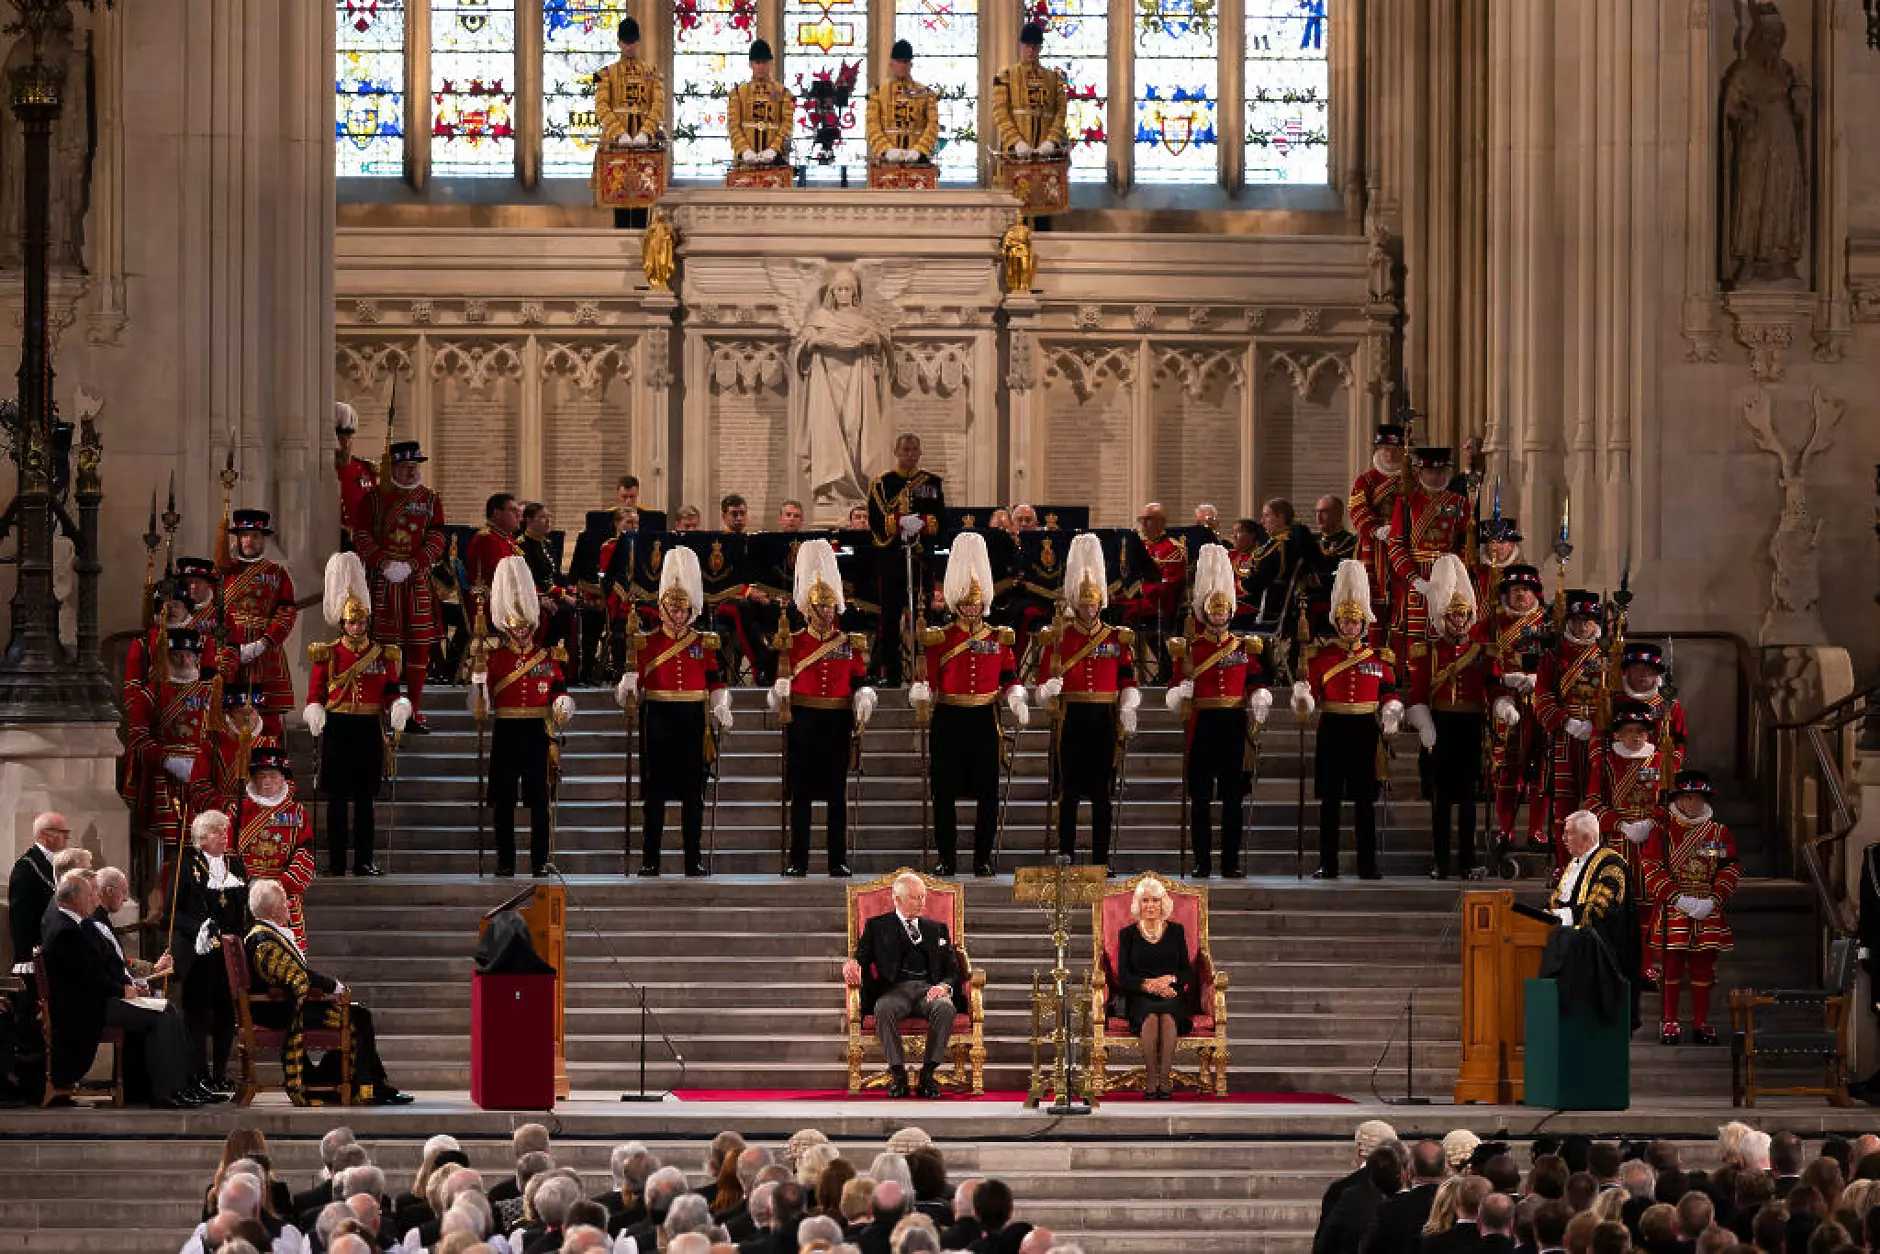 Крал Чарлз Трети за първи път говори в британския парламент в качеството си на монарх